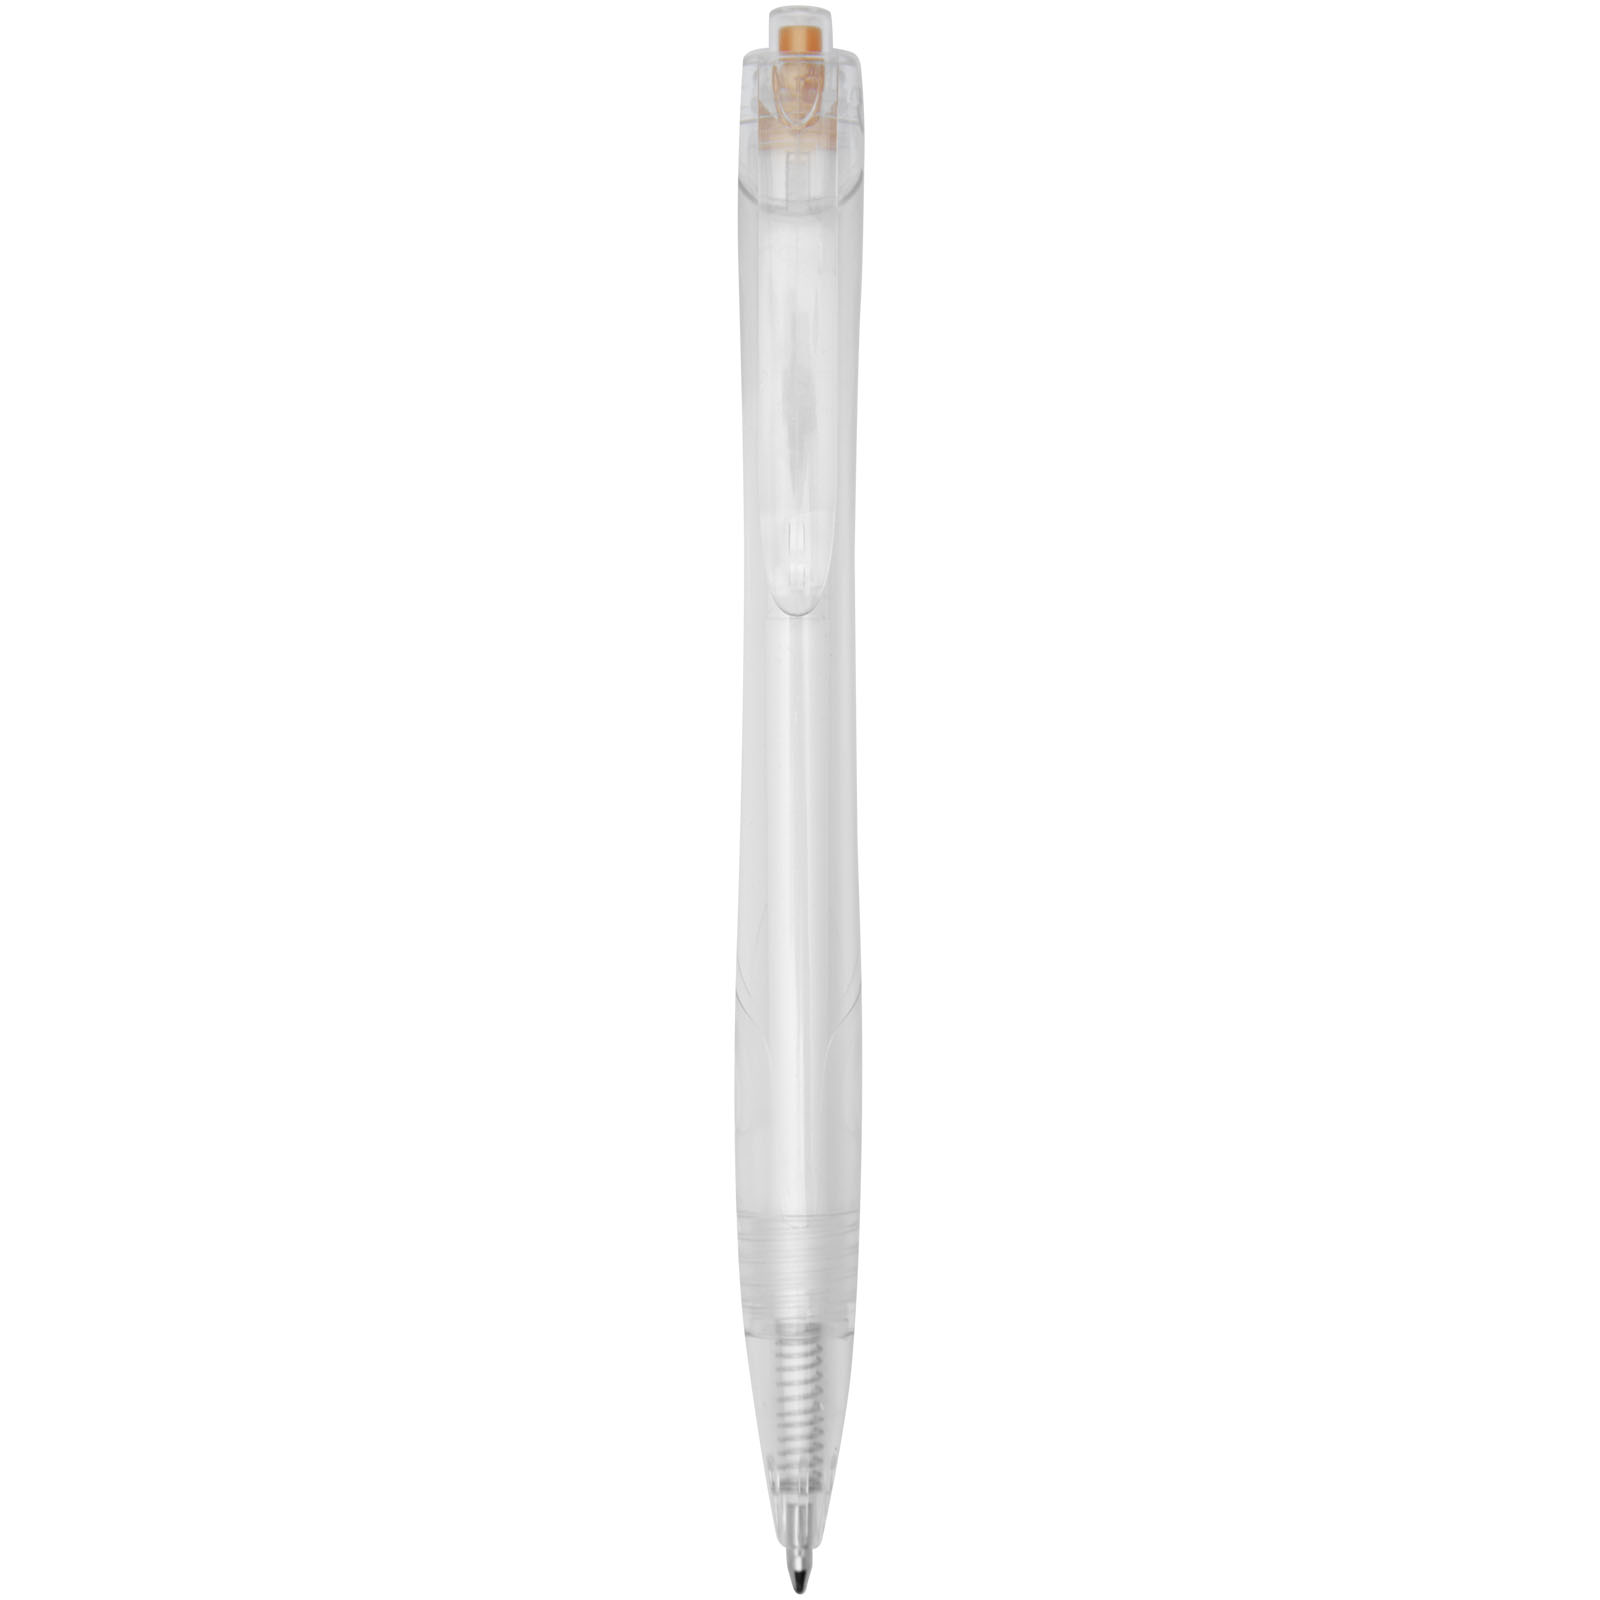 Advertising Ballpoint Pens - Honua recycled PET ballpoint pen  - 0